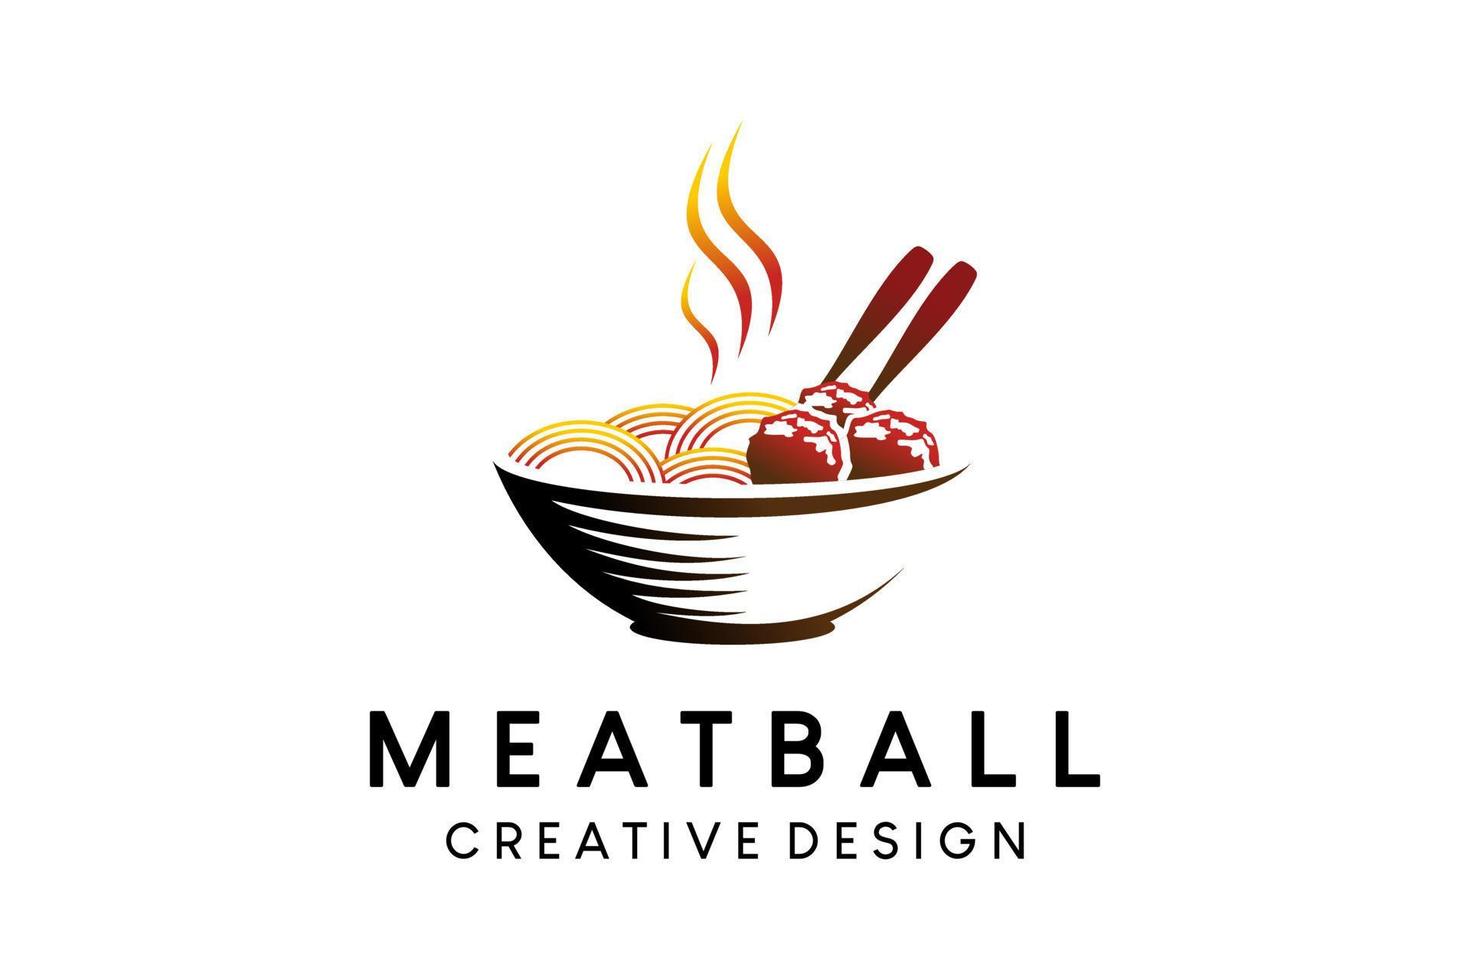 diseño de logotipo de albóndigas con concepto creativo de estilo vintage vector